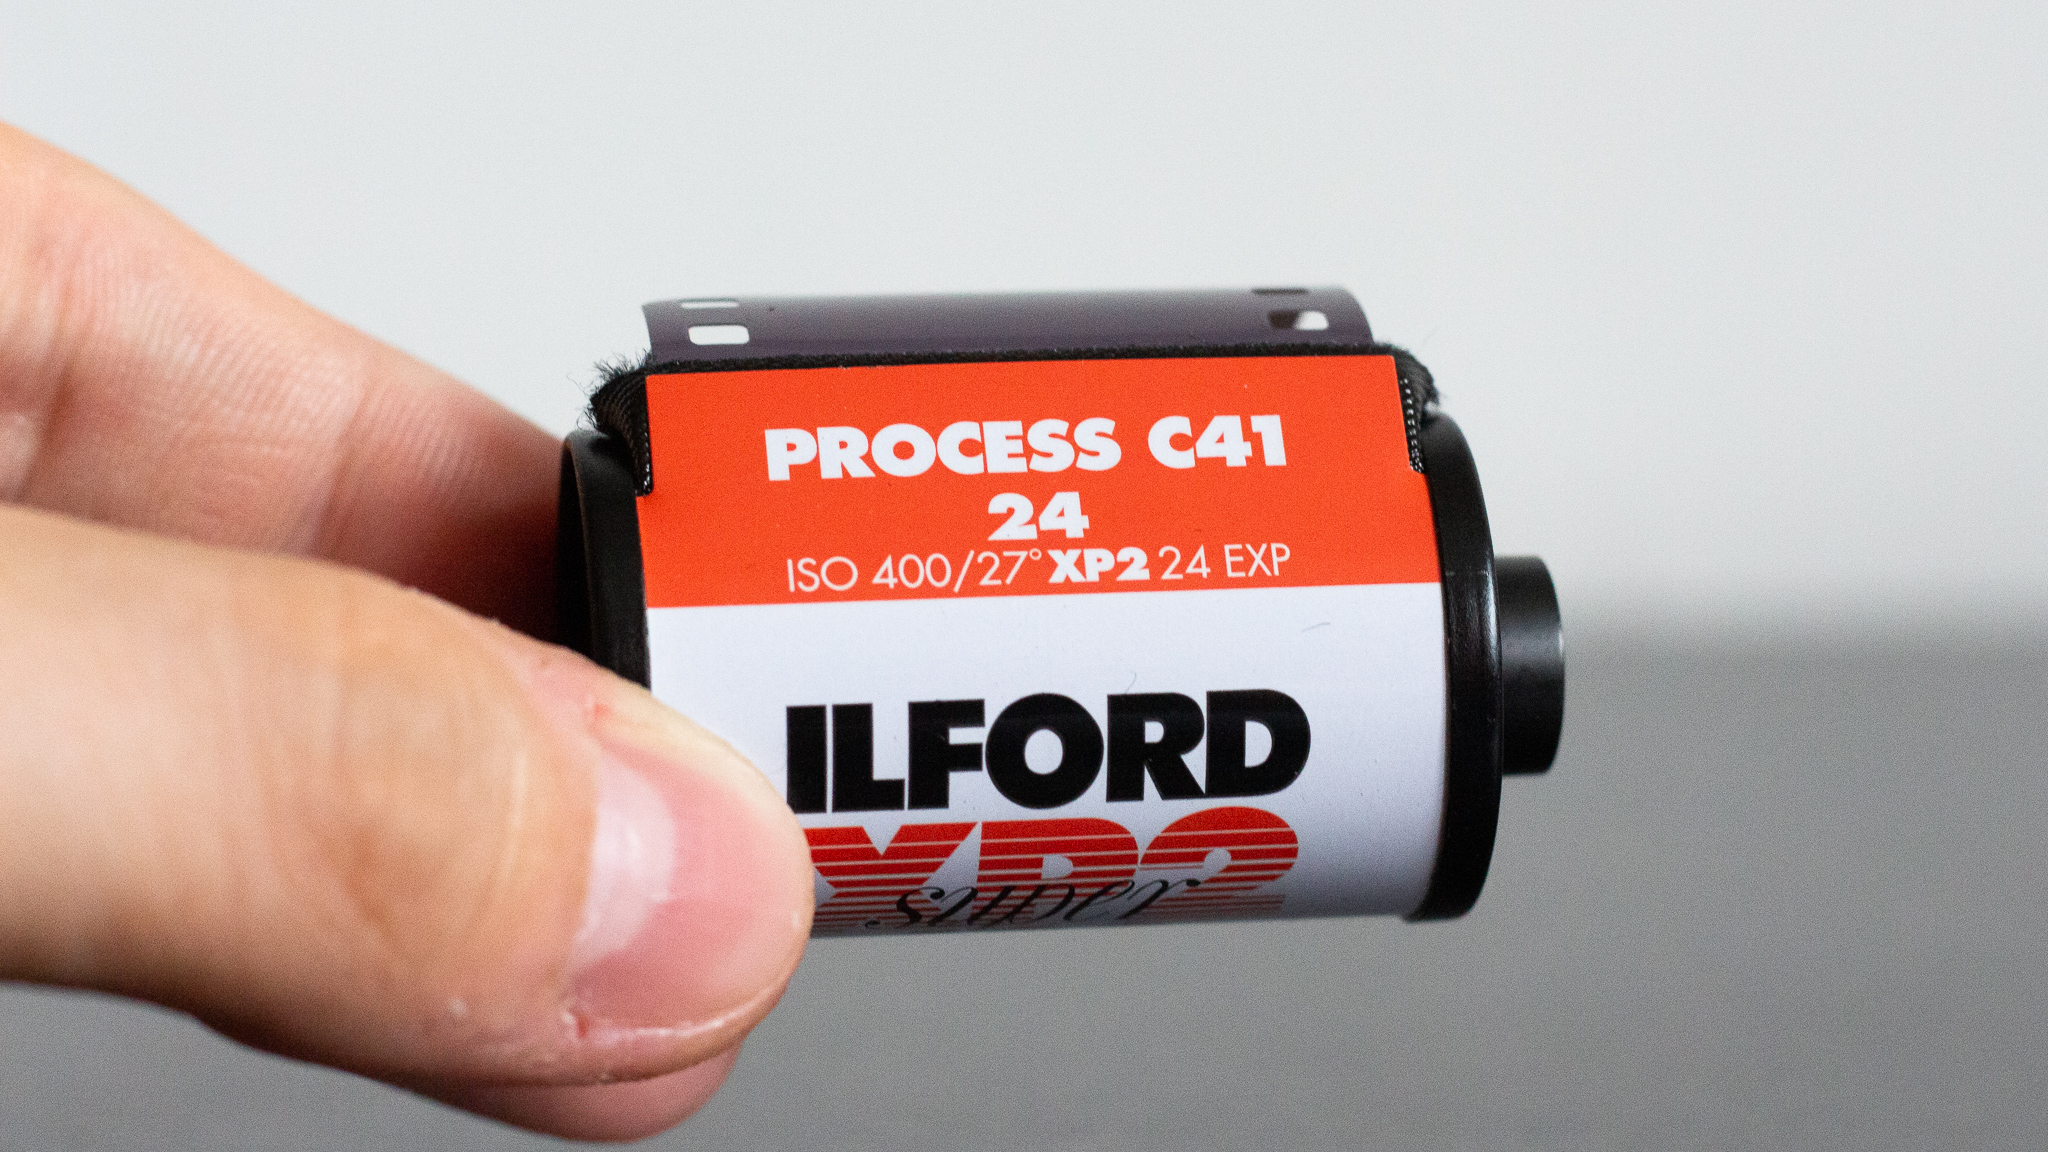 Photographie d'une Pellicule Ilford Super XP2, 
elle indique "Process C41, 24 poses, ISO400"